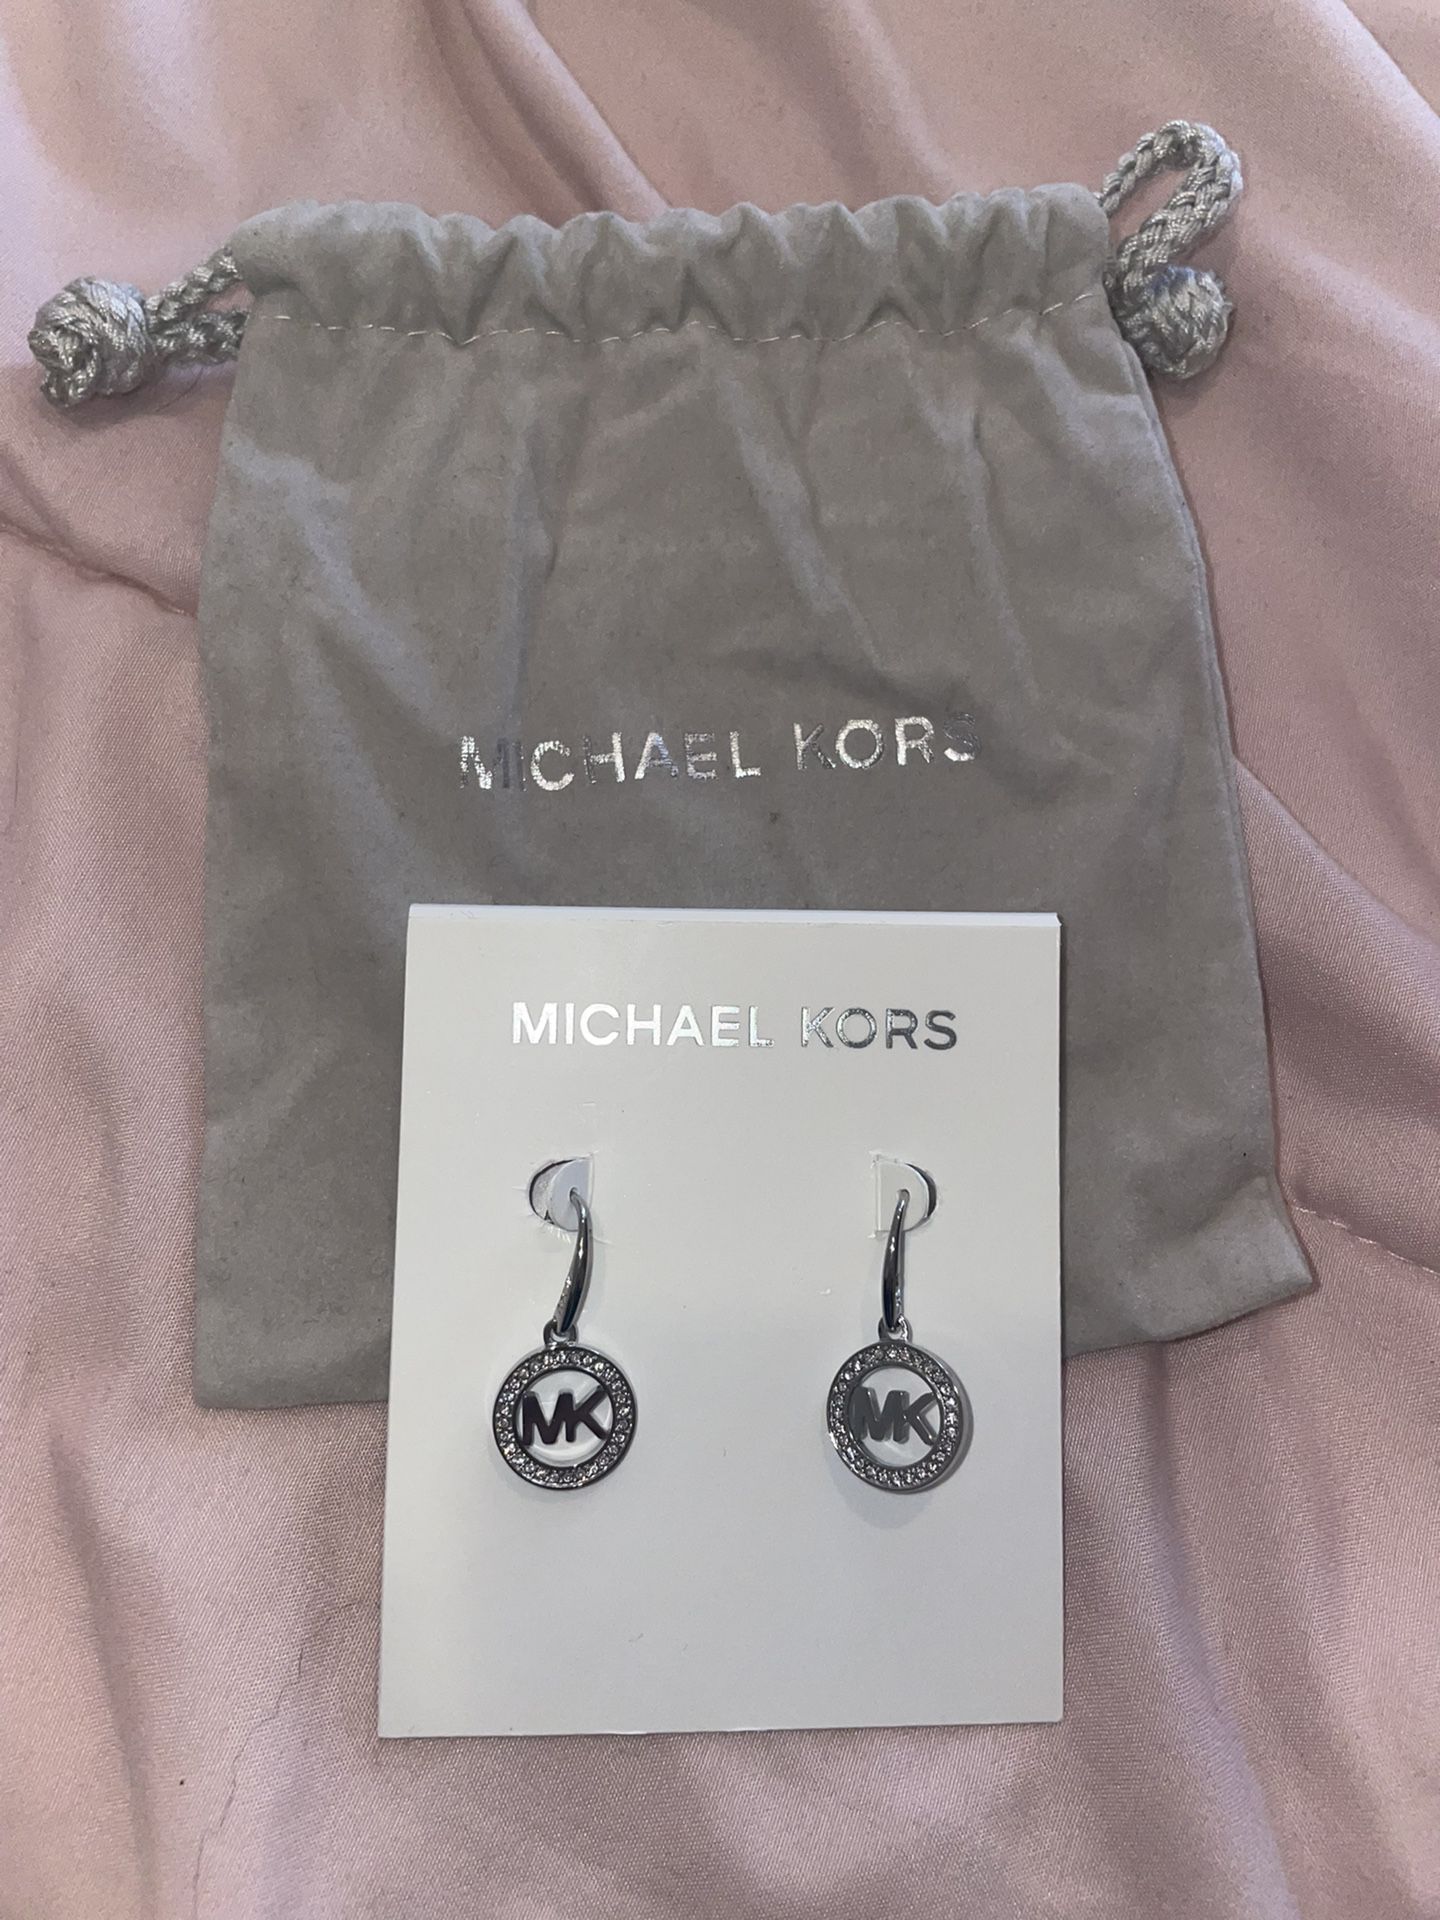 Michael Kors Silver-Tone MK Logo Drop Earrings for Sale in Brooklyn, NY -  OfferUp